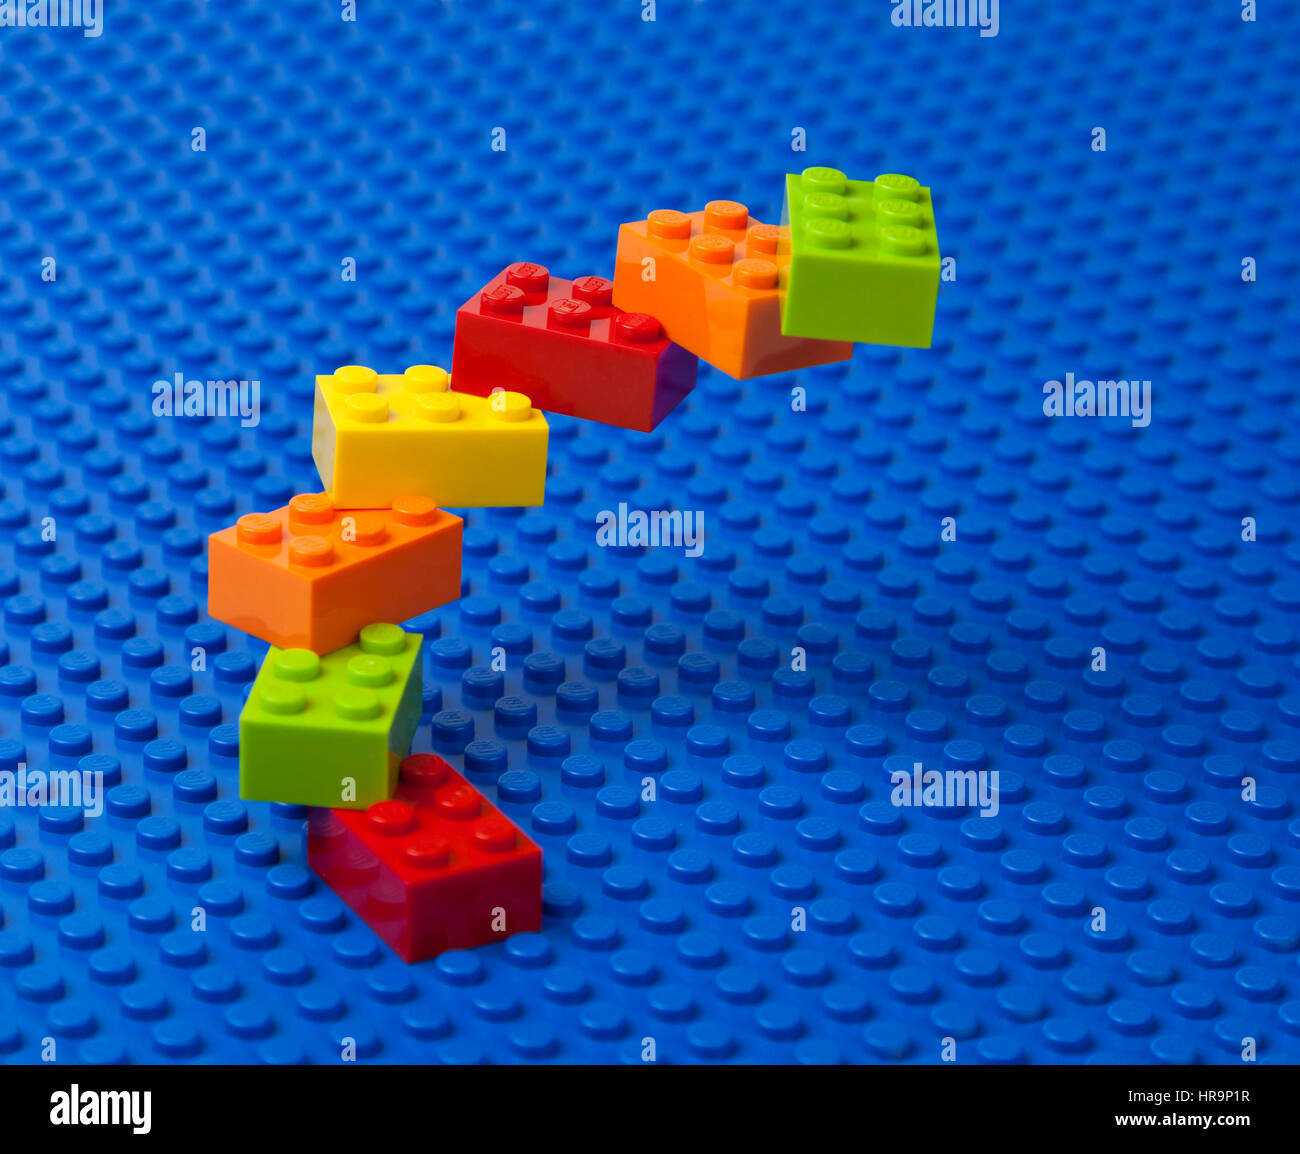 Construction escalier spirale ascendante ou de briques Lego sur une plaque de base Lego bleu. Banque D'Images